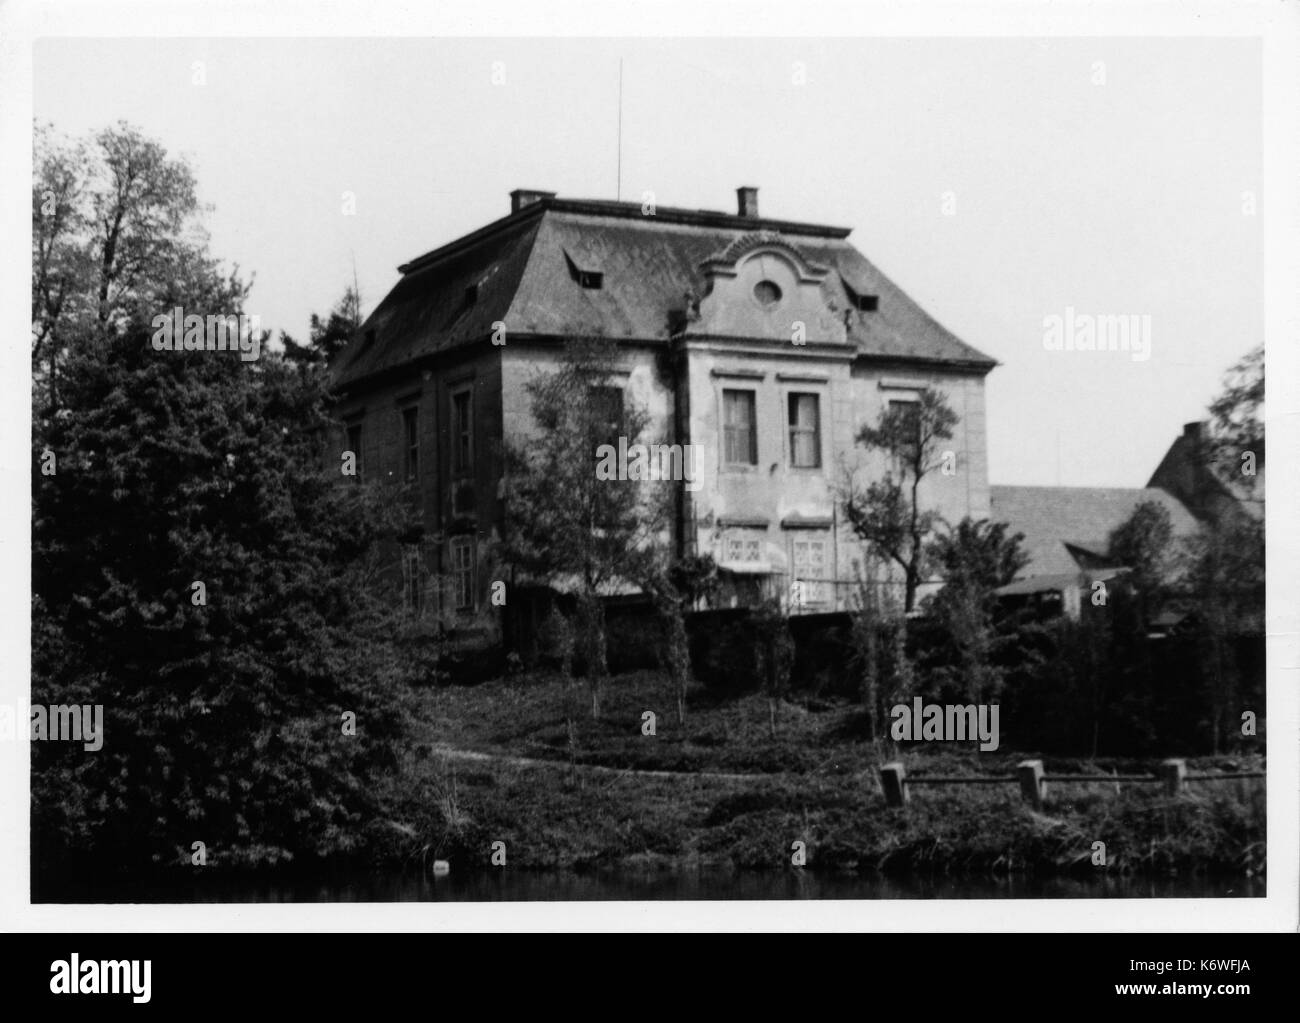 Gustav Mahler - Das Lied von der Erde - Göding Outhouse of F Redlich's Villa at Göding. M stayed here when writing Das Lied von der Erde Austrian composer, 1860-1911 Stock Photo